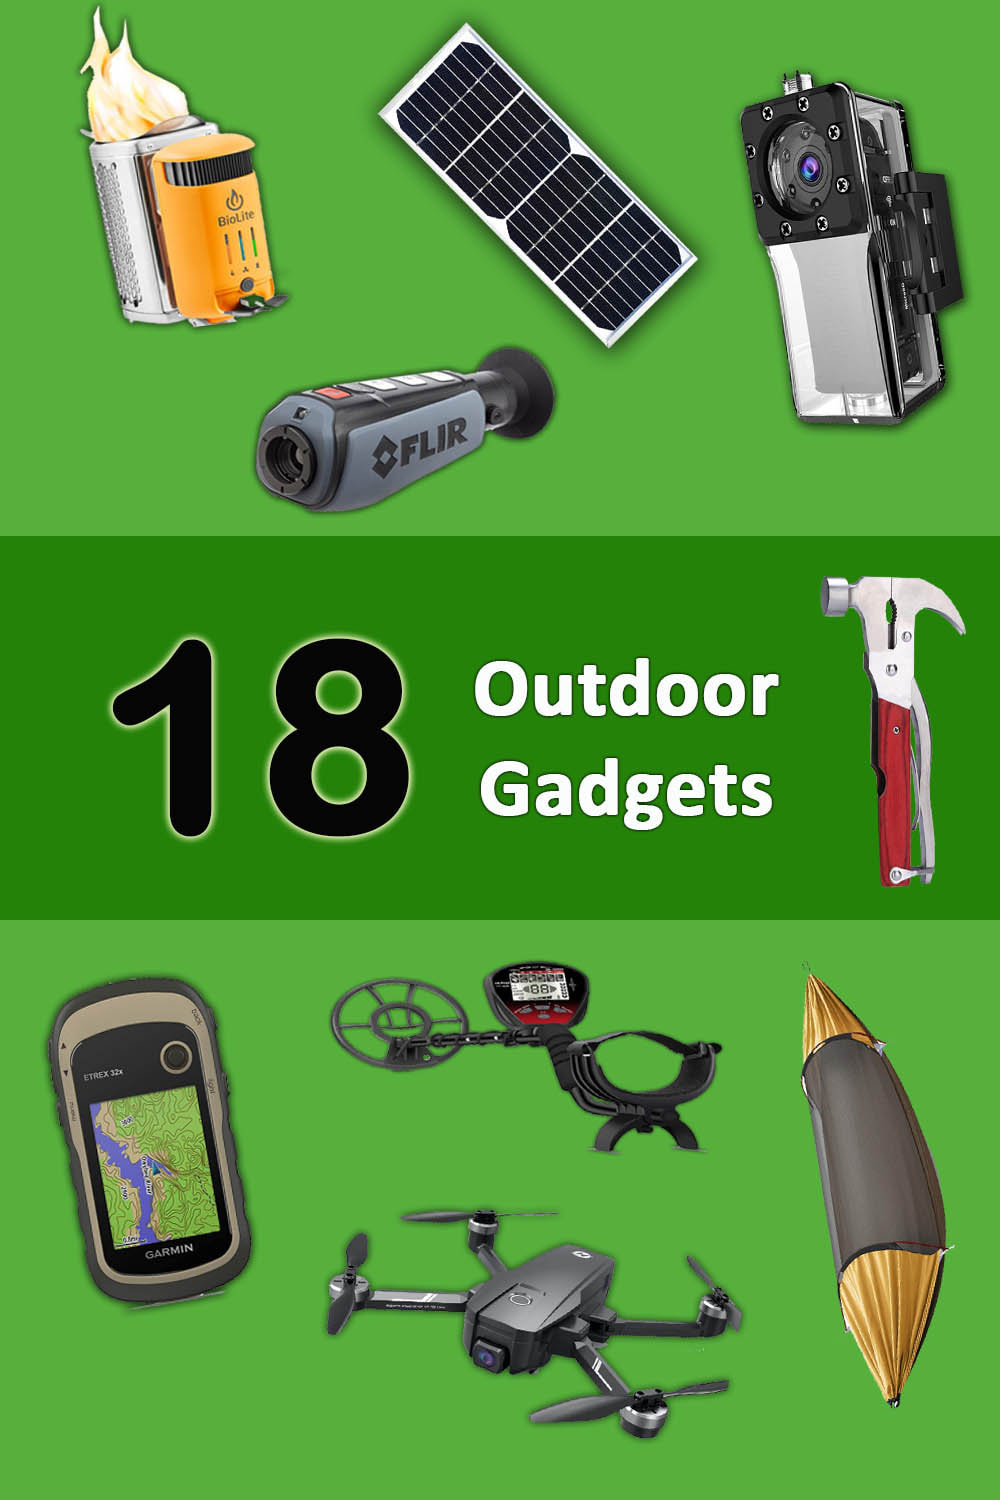 Outdoor gadgets